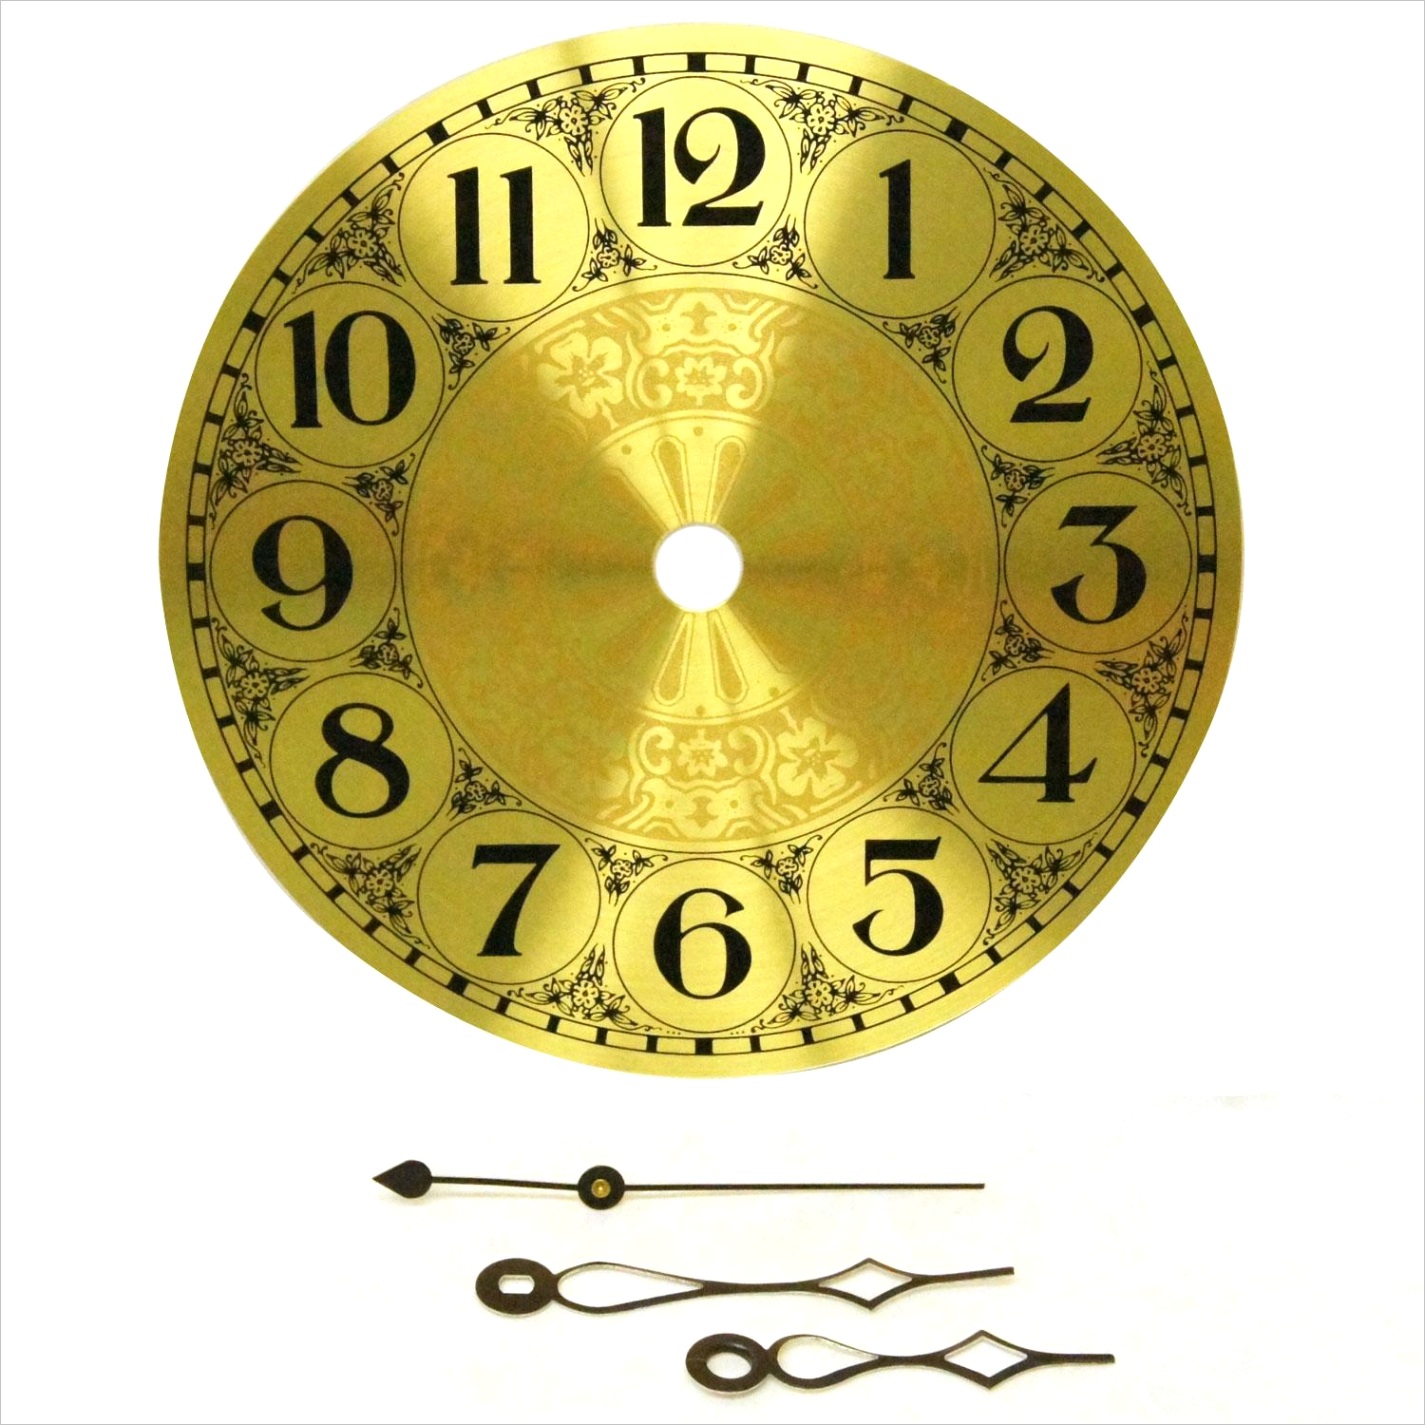 5 brass clock face